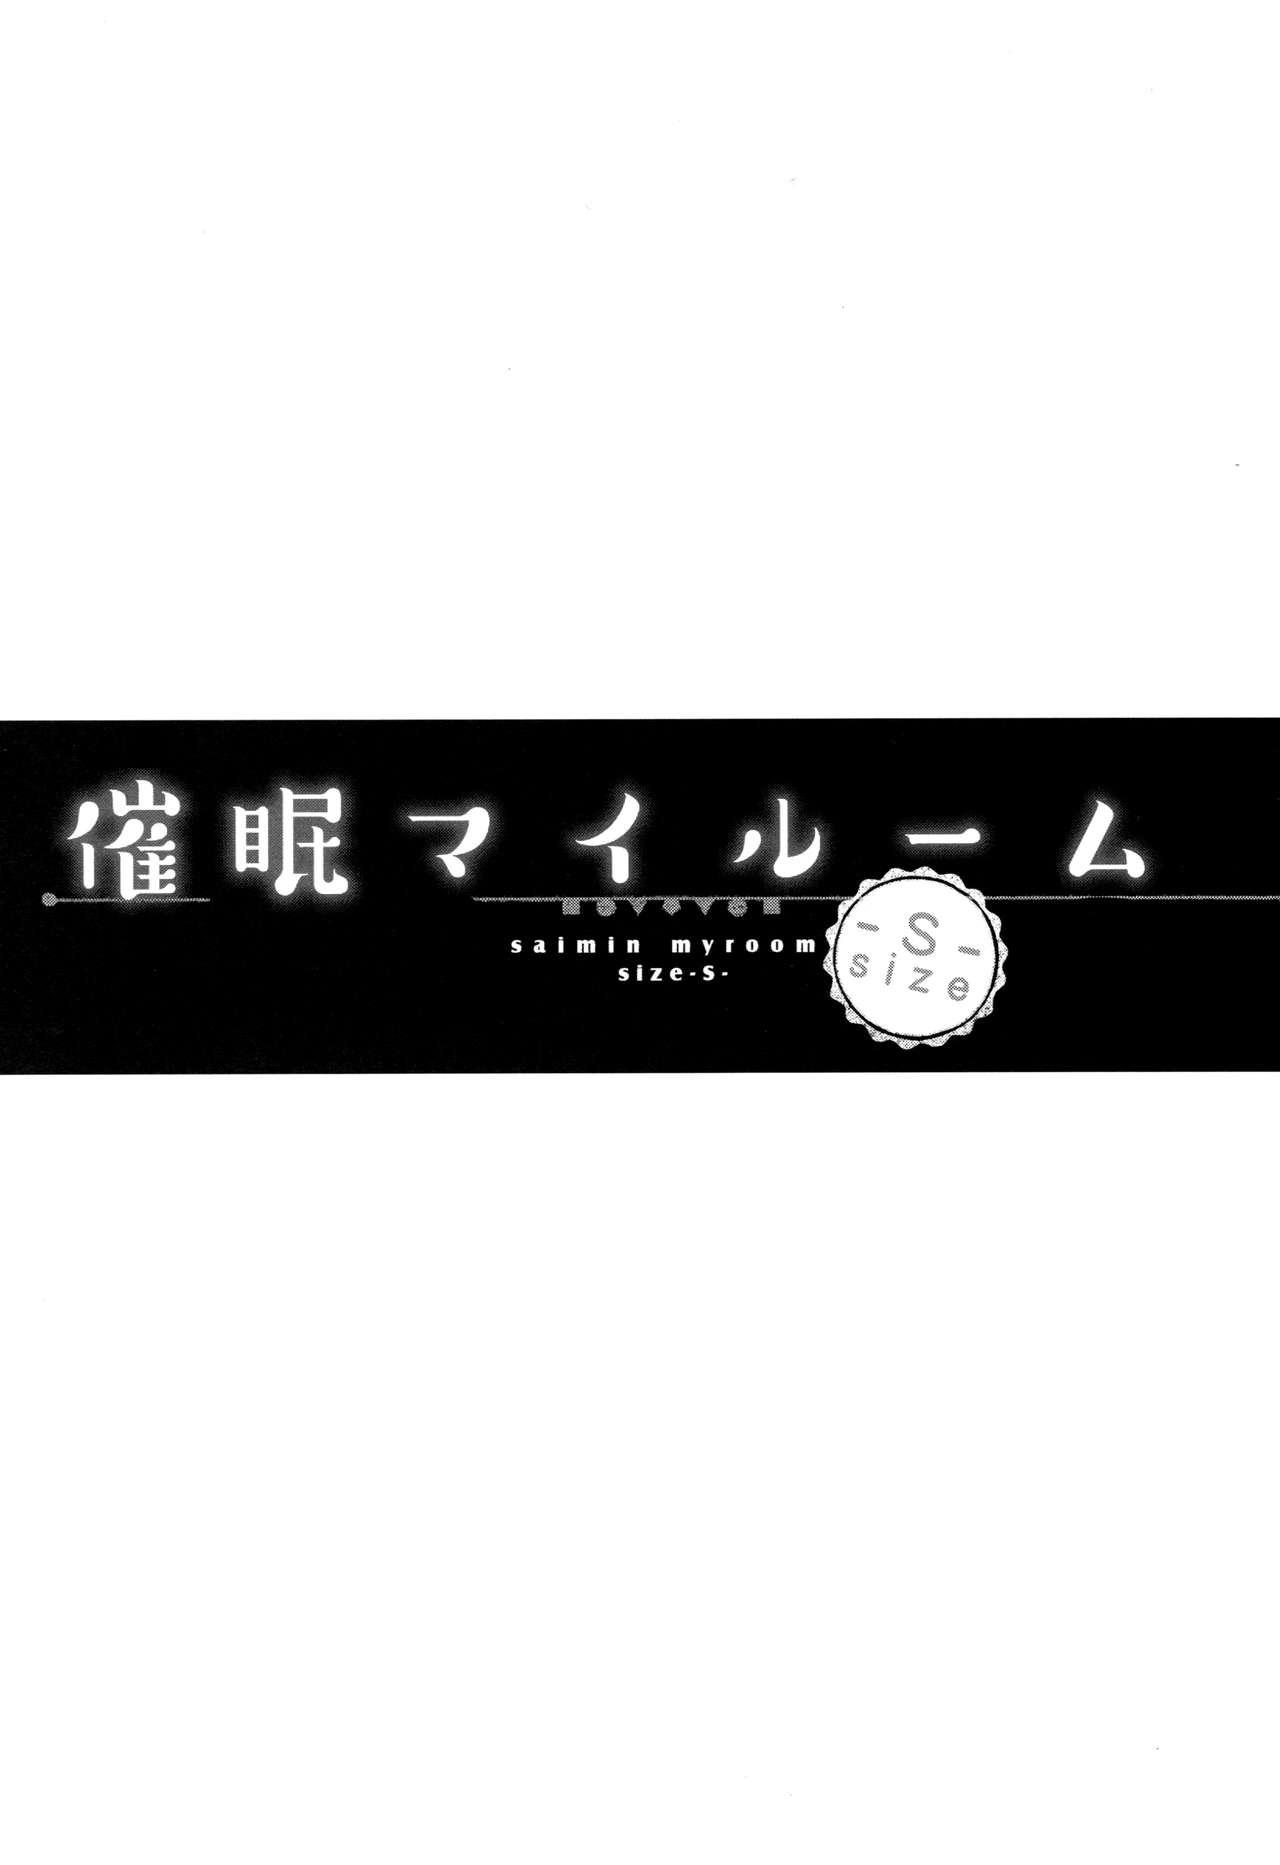 (SC2017 Summer) [Shimajiya (Shimaji)] Saimin My Room -S- Size (THE IDOLM@STER CINDERELLA GIRLS) [English] [maipantsu + B.E.C. Scans] 1